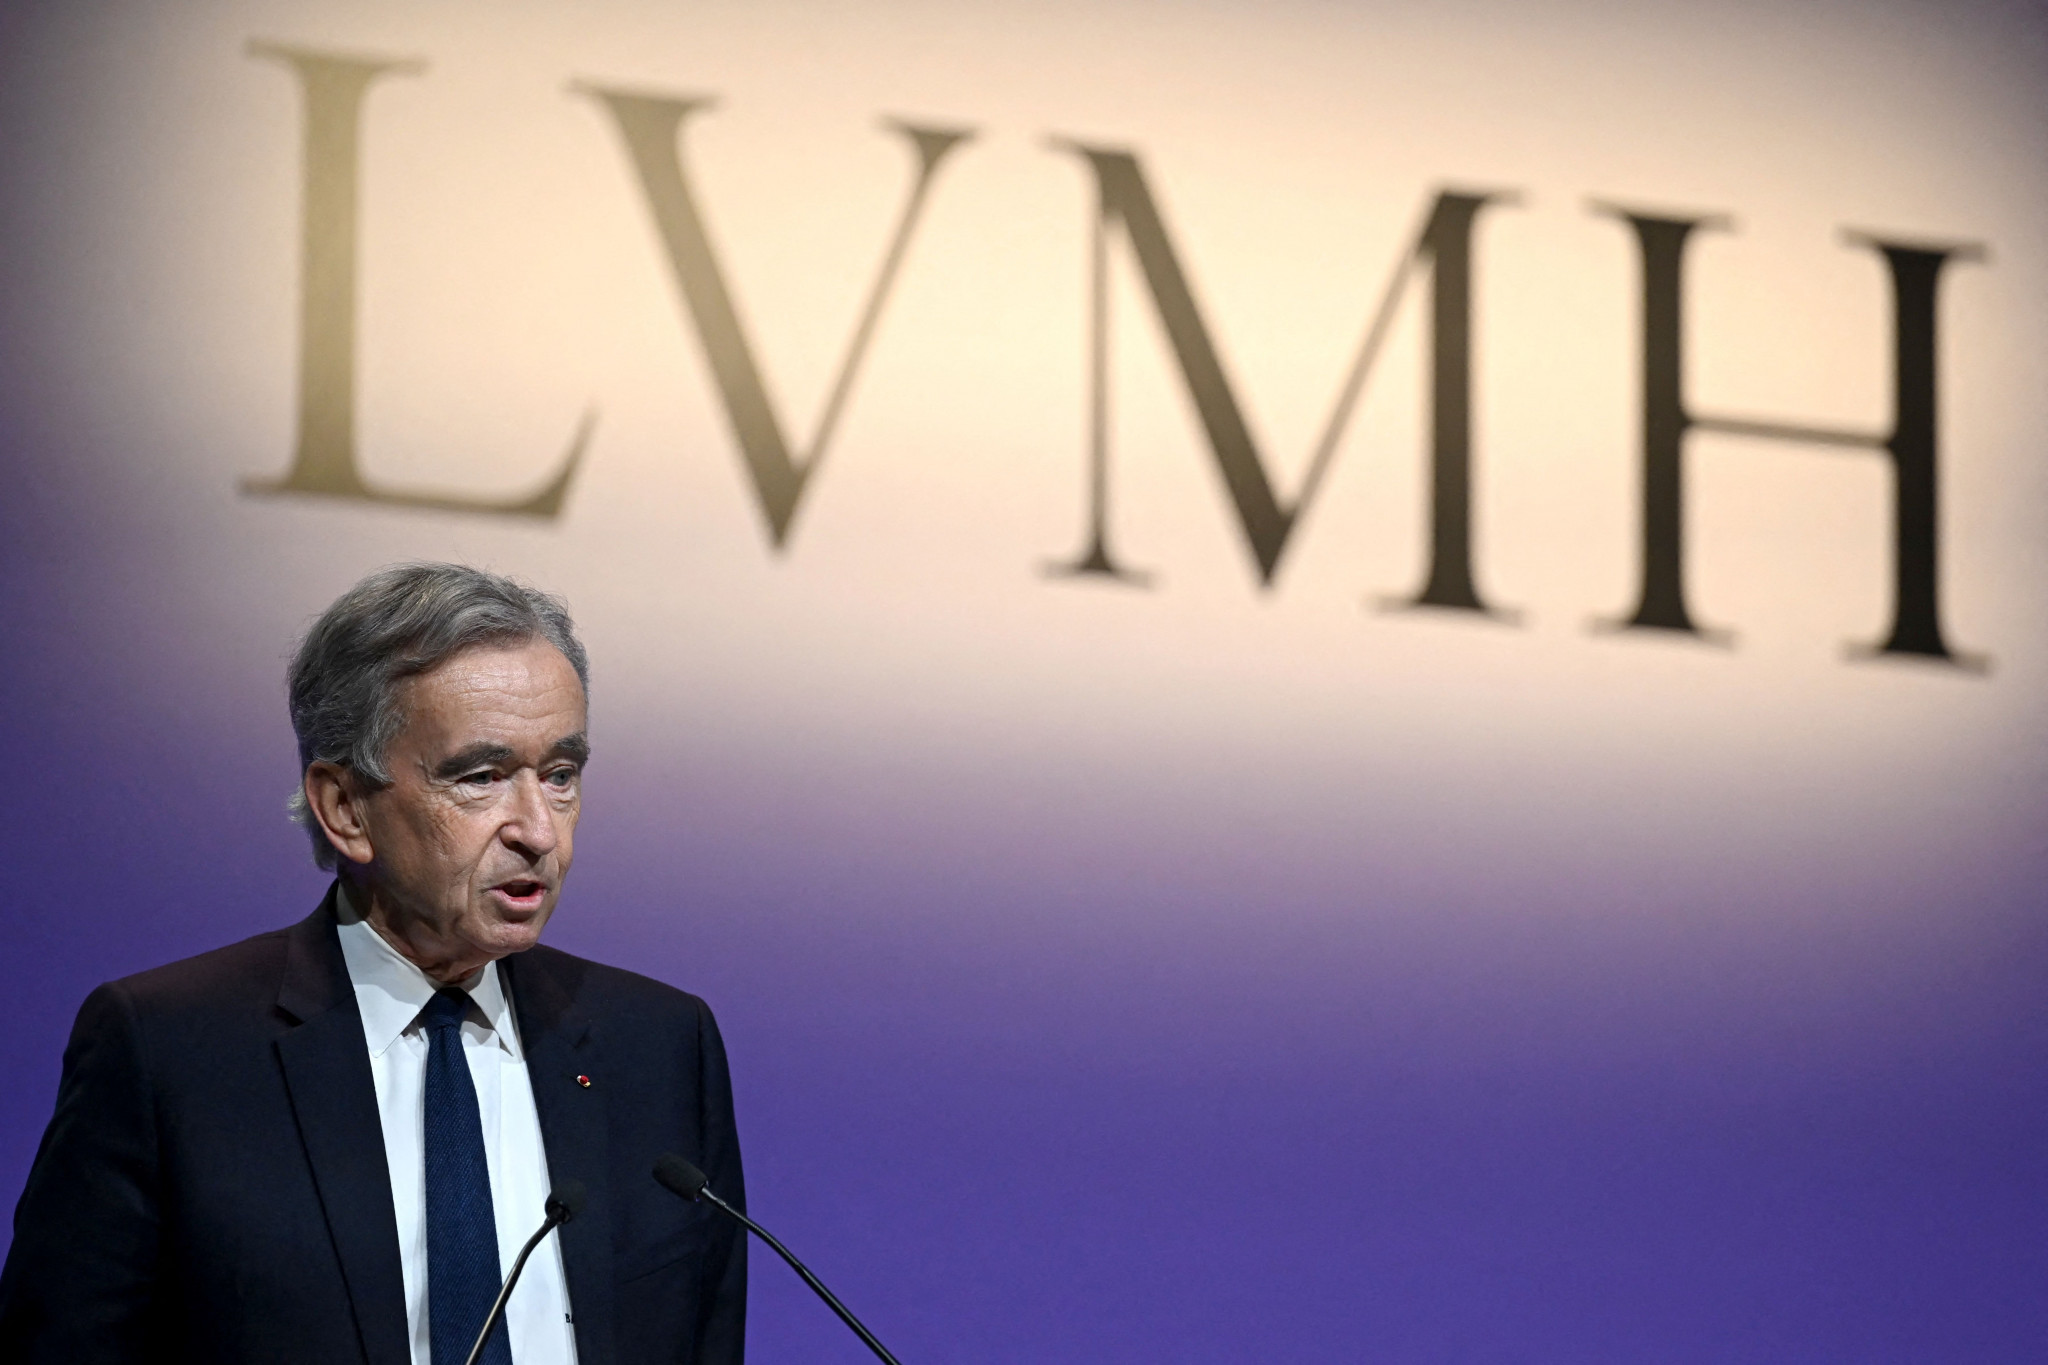 LVMH breaks into world's top 10 as market value nears $500 billion